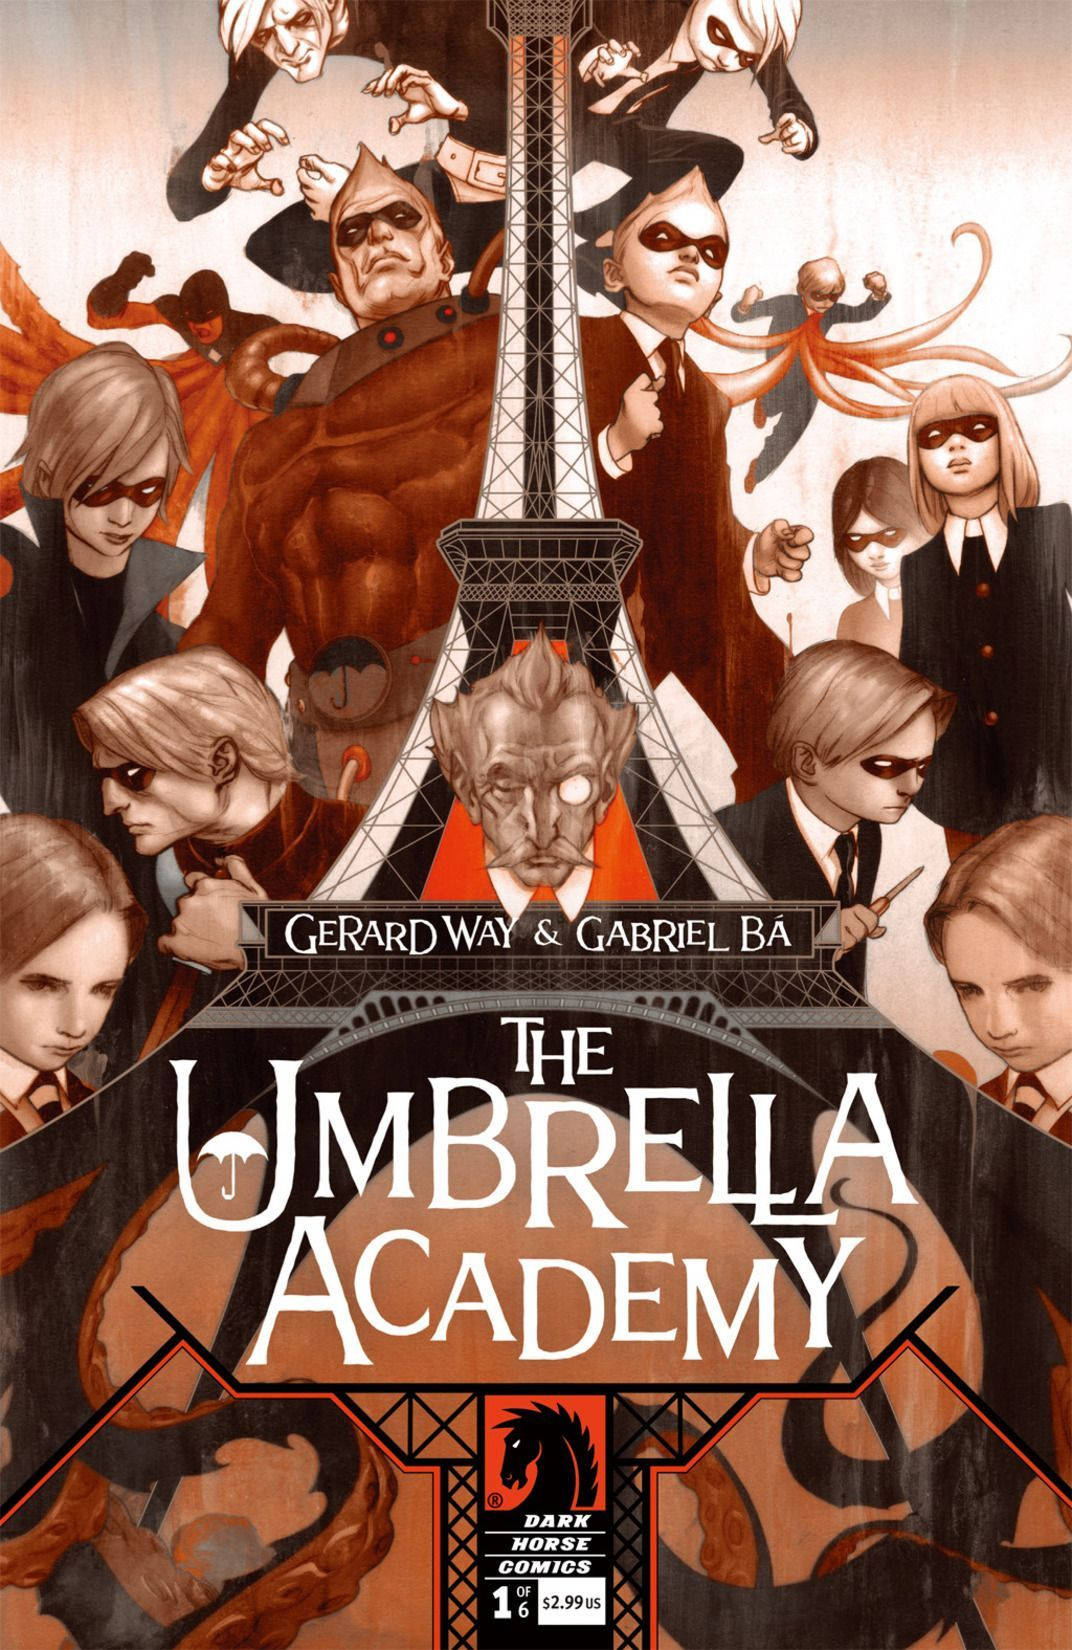 The Umbrella Academy - Apocalypse Suite Background